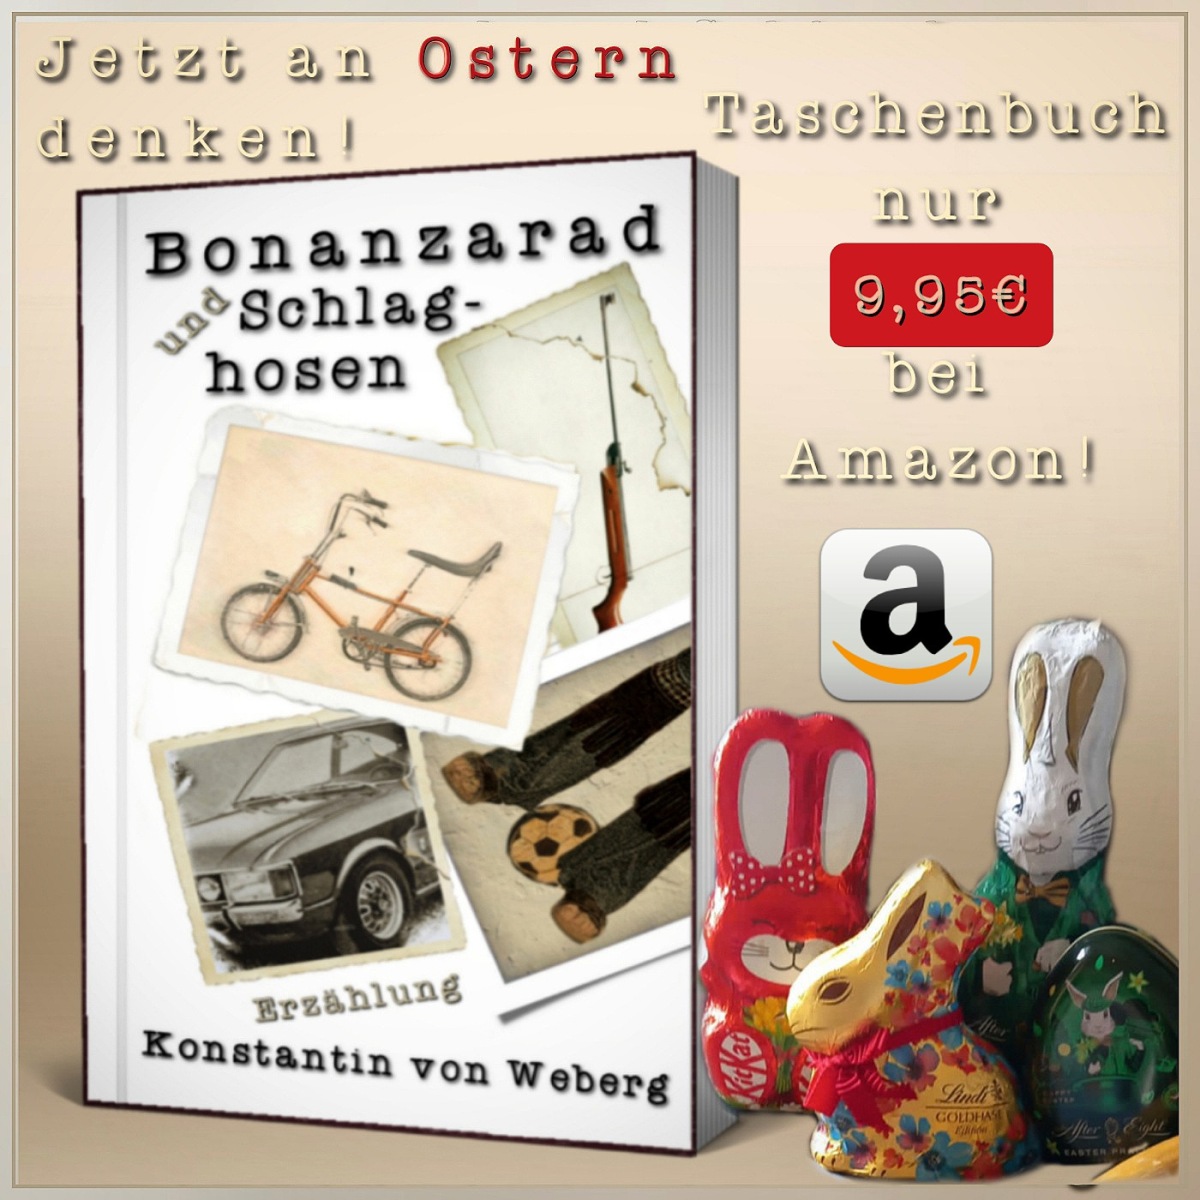 Nur noch zwei Wochen bis Ostern. Hier ein geniales Geschenk: Das Buch ‚Bonanzarad und Schlaghosen‘ Nur 9,95€ bei Amazon 🐇🛍️🎁📖❤️